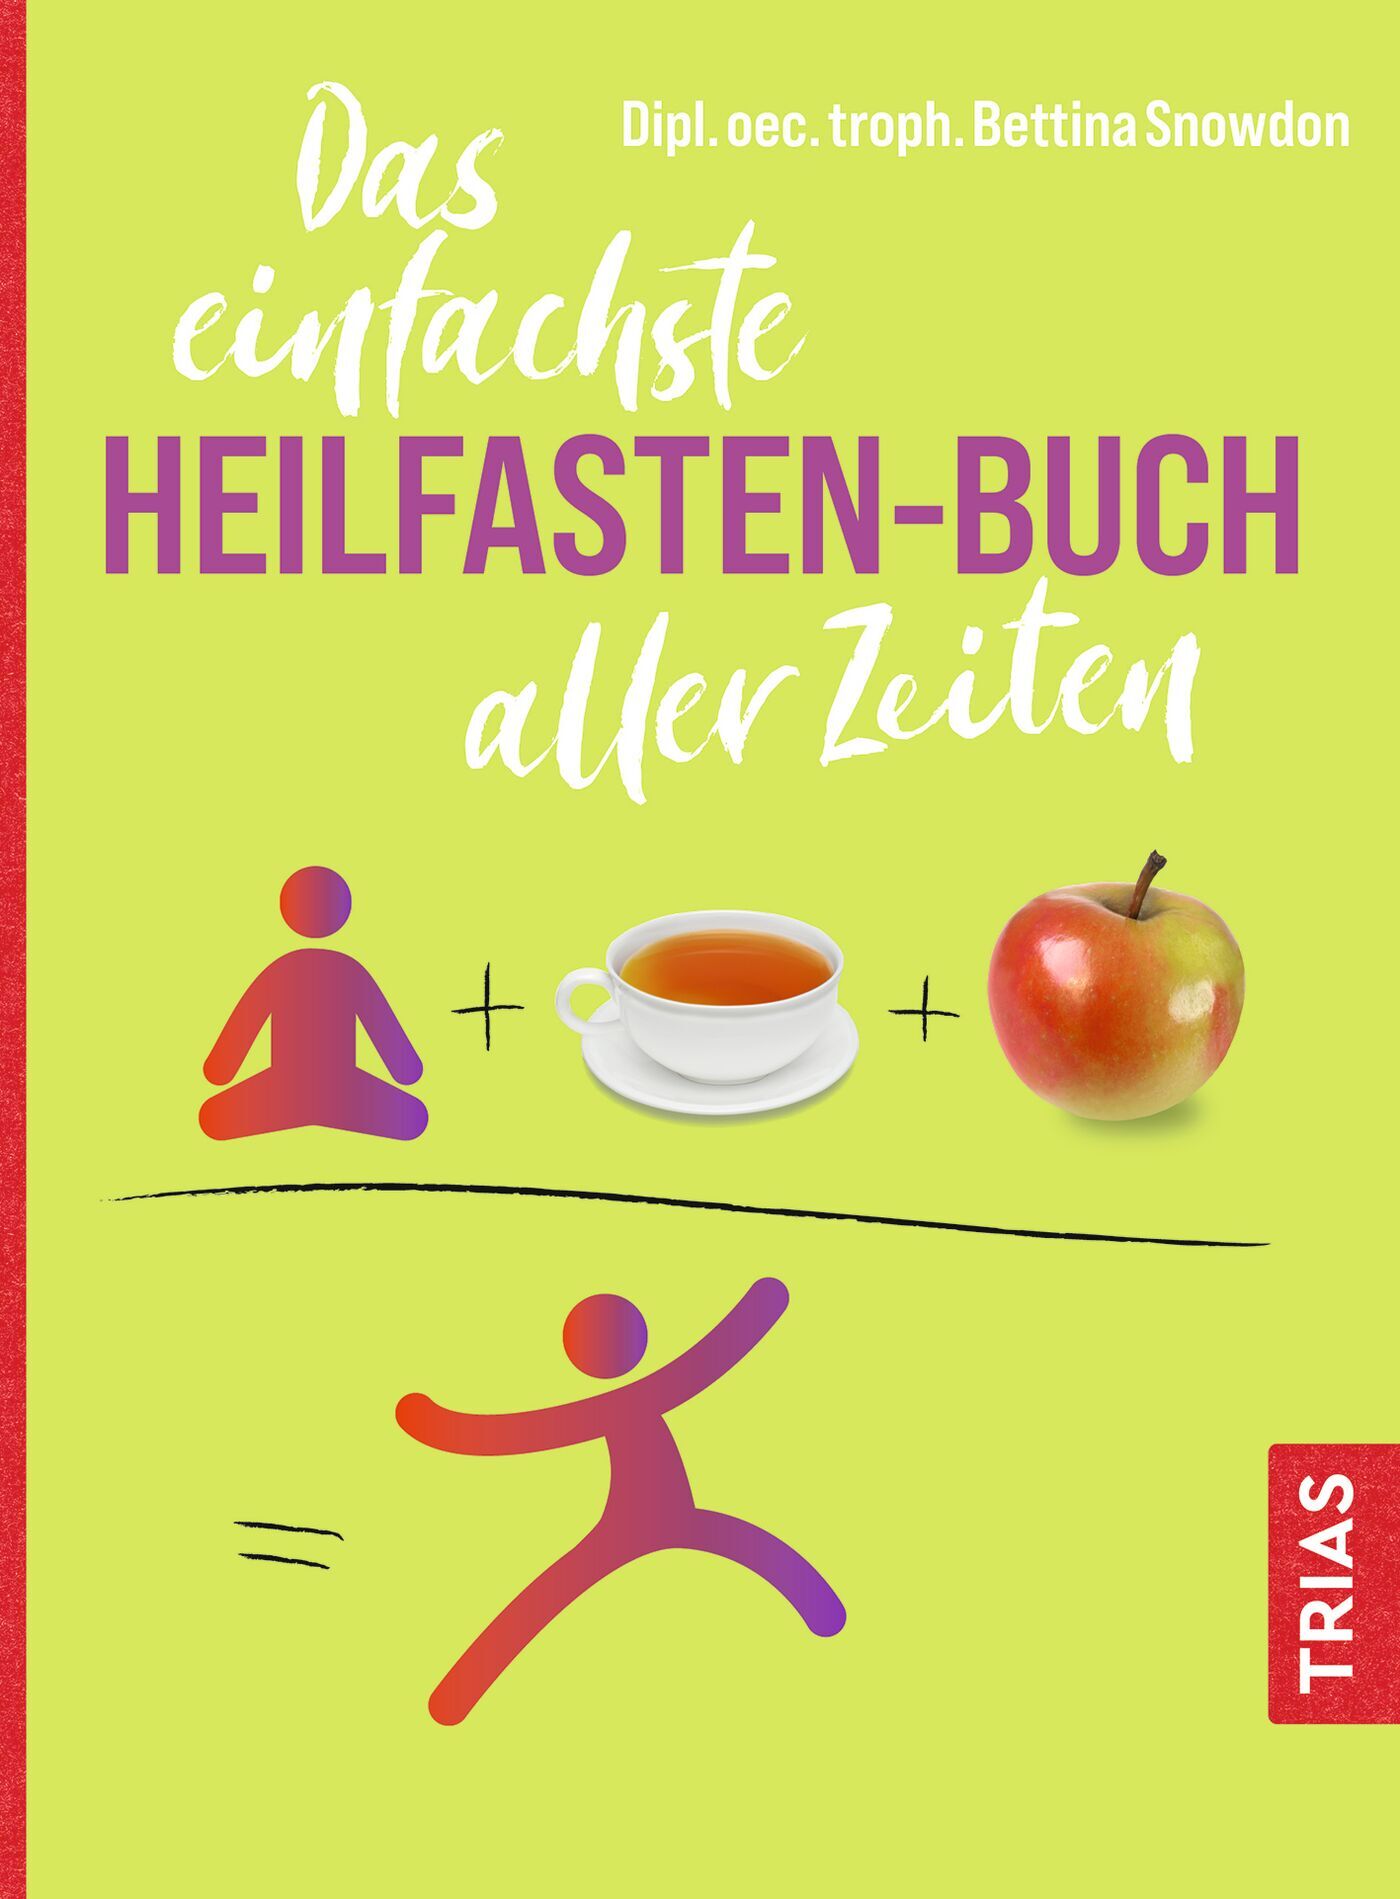 Das einfachste Heilfasten-Buch aller Zeiten, 9783432118406